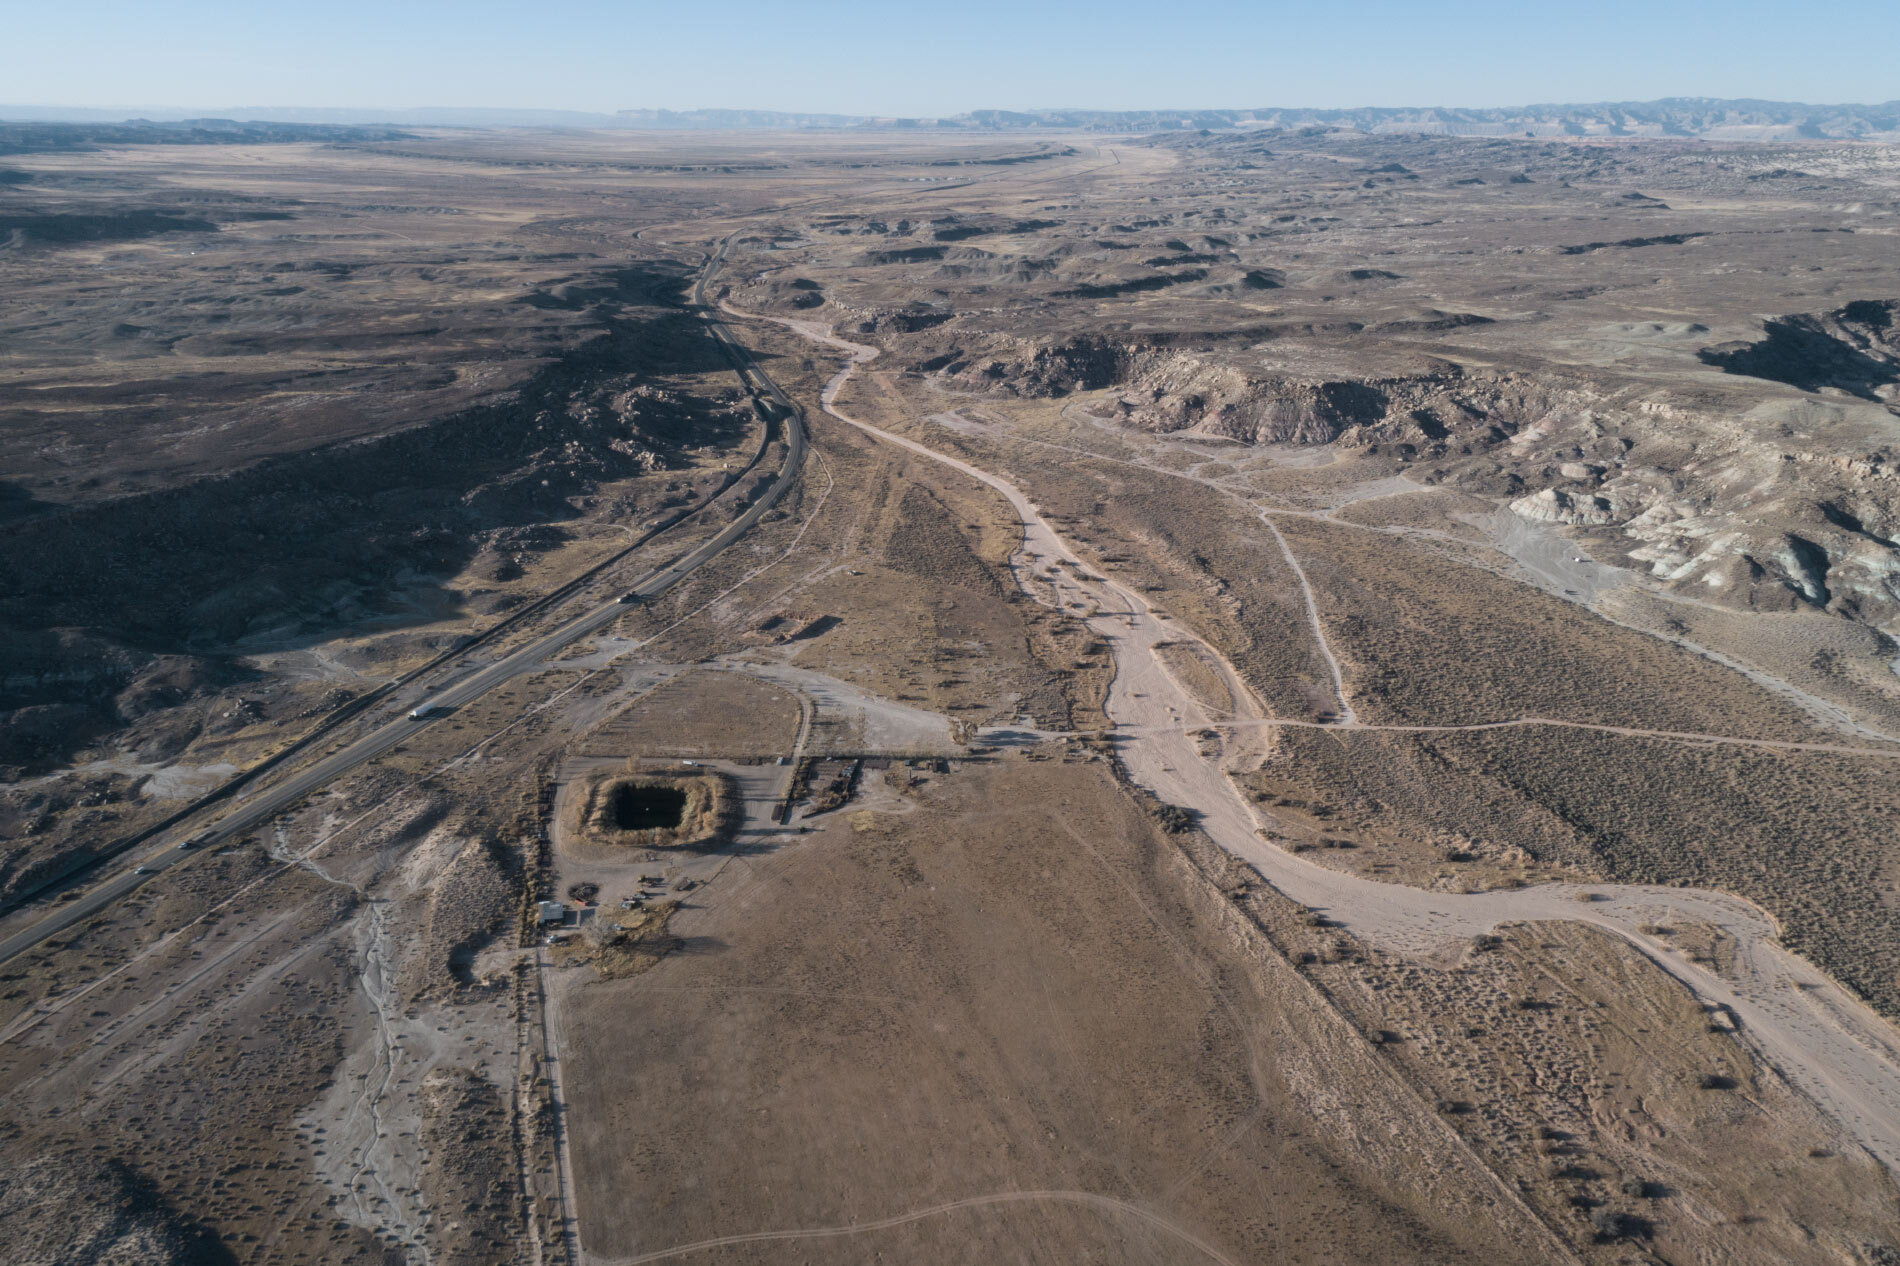   Moab Isolation Center site (Moab, Utah)  